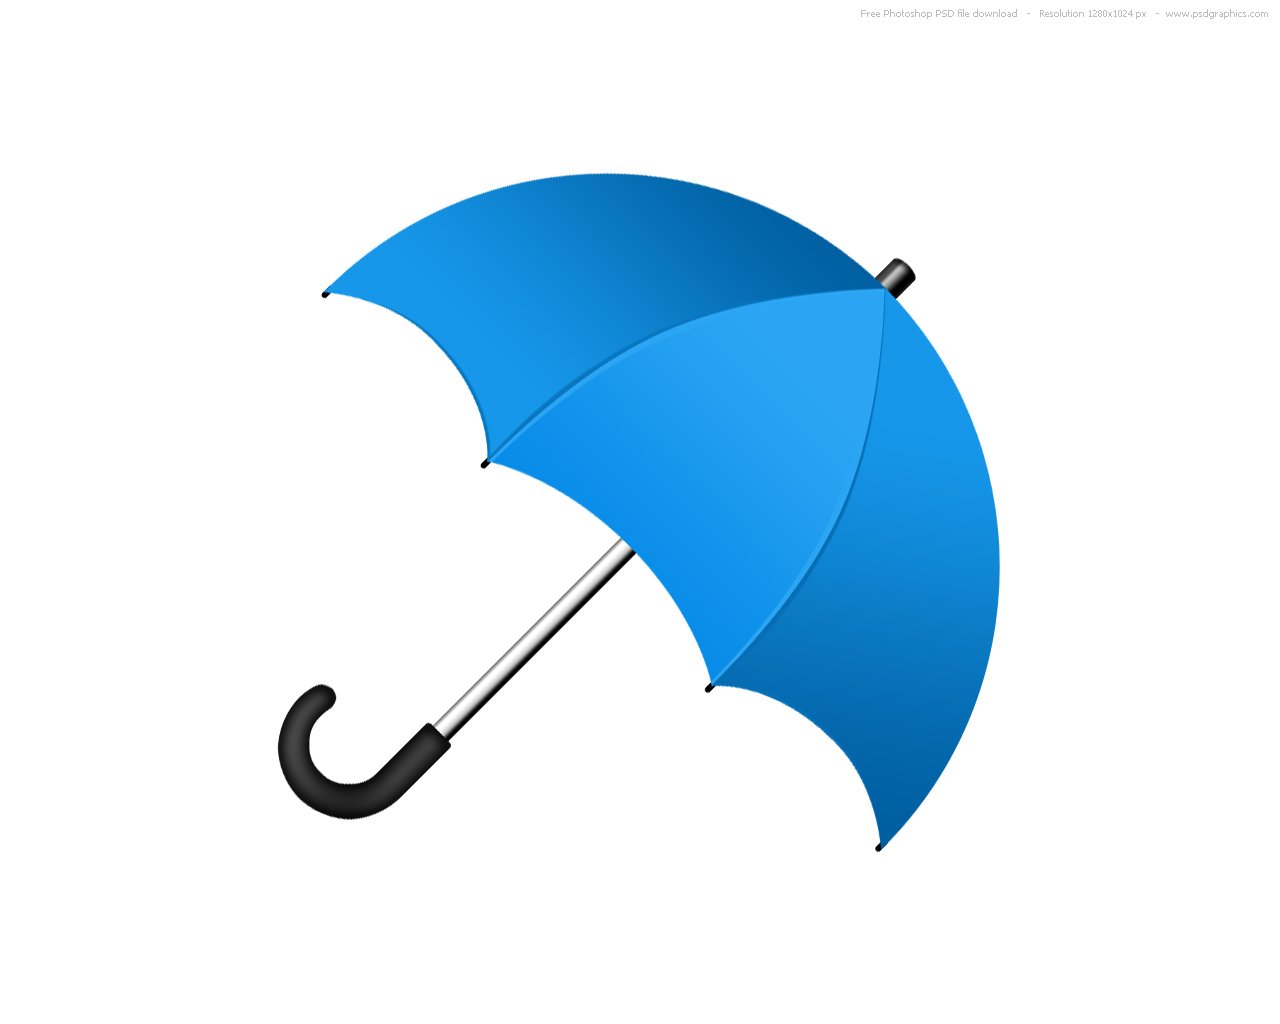 shaivi-ka-funda-so-i-finally-buy-an-umbrella